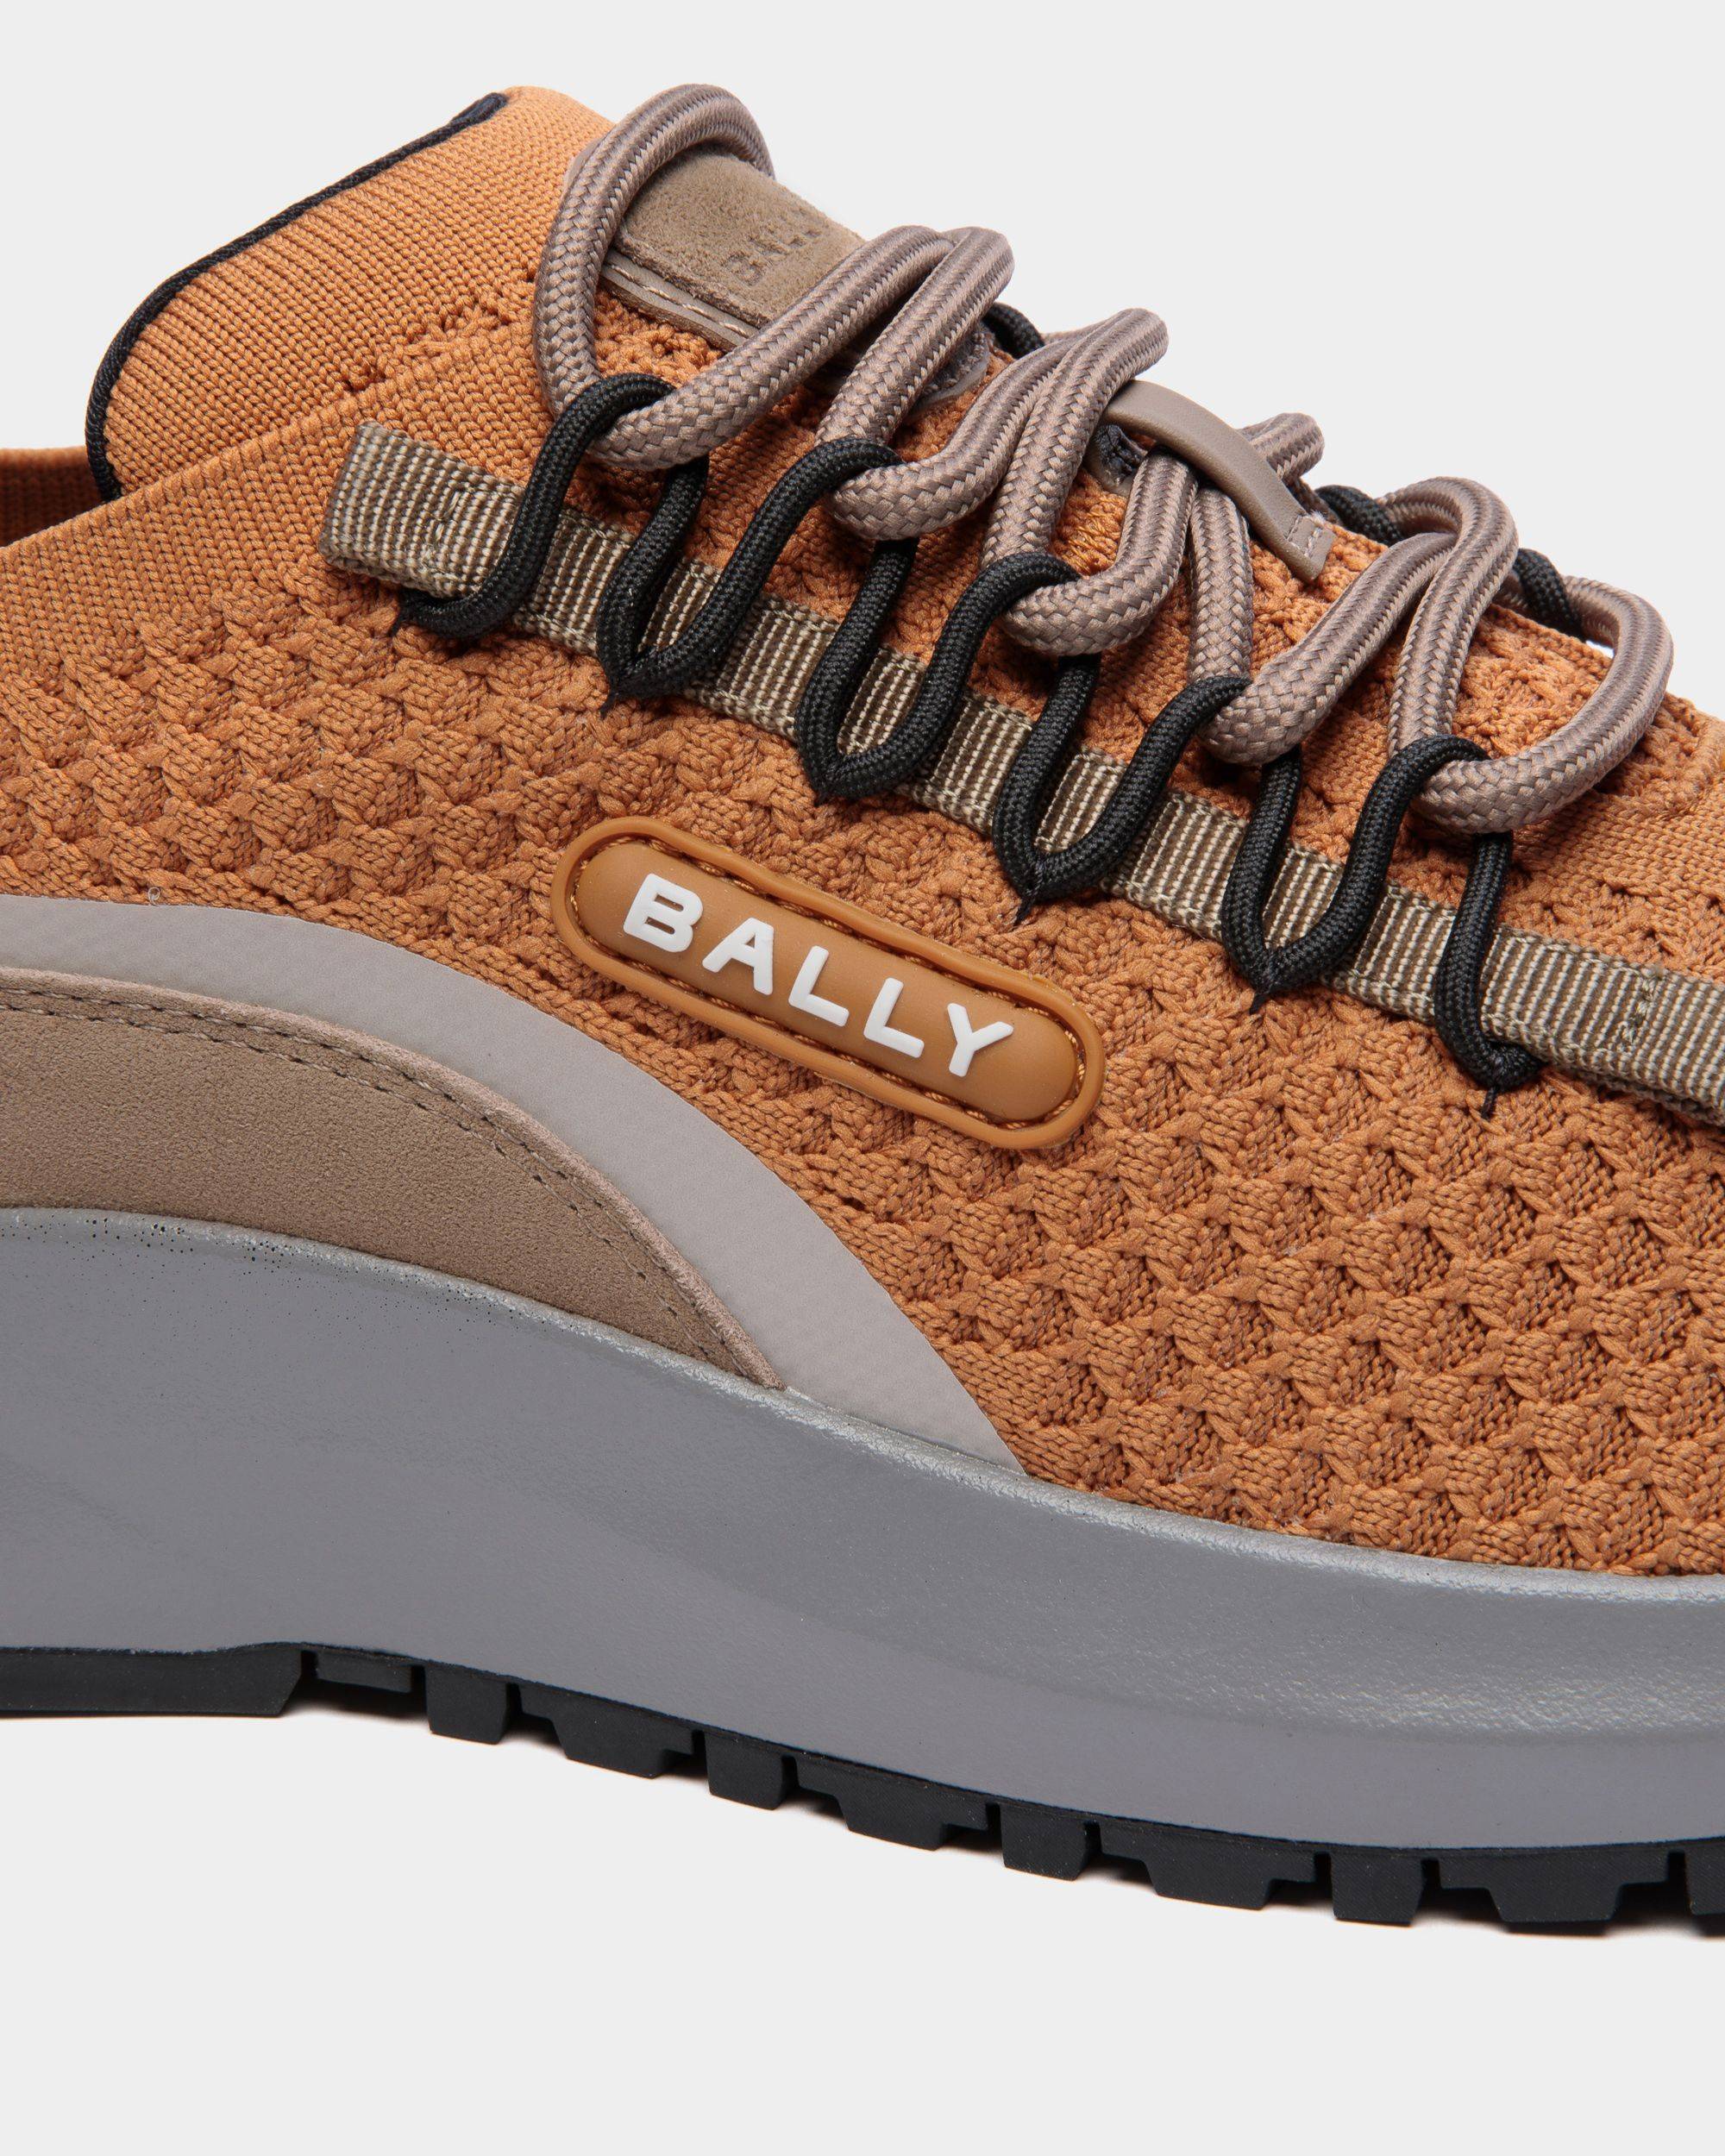 Outline | Men's Sneaker in Brown Nylon | Bally | Still Life Detail